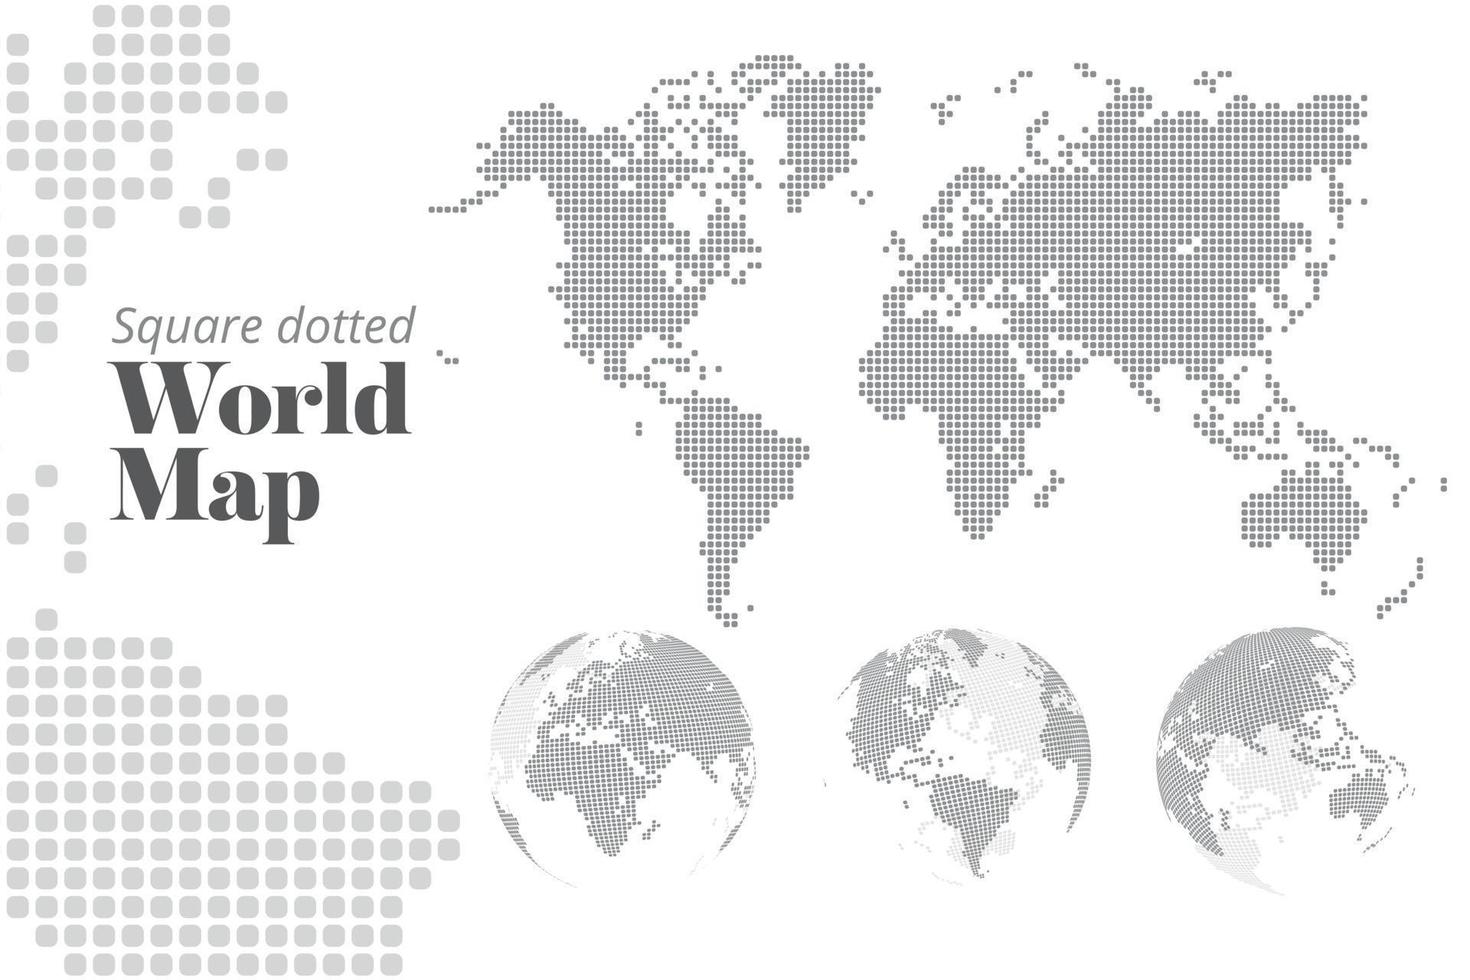 mappa del mondo punteggiata quadrata e globi terrestri che mostrano tutti i continenti. modello di illustrazione vettoriale per web design, relazioni annuali, infografica, presentazione aziendale, marketing, viaggi e turismo.